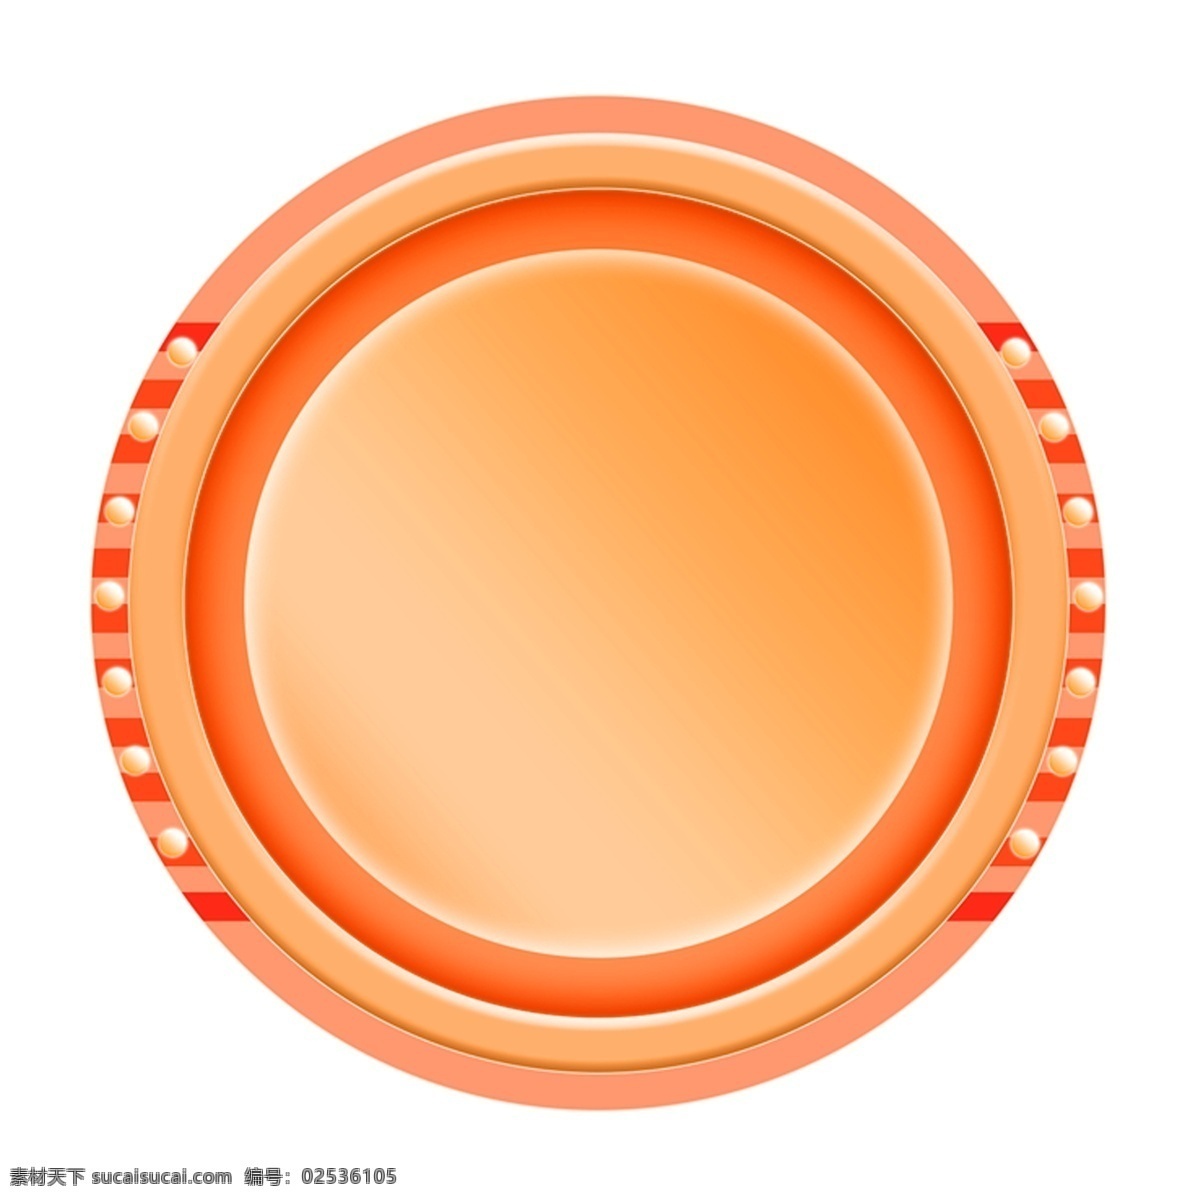 创意 圆形 背景 框 橙色 活动 电商 背景框 设计素材